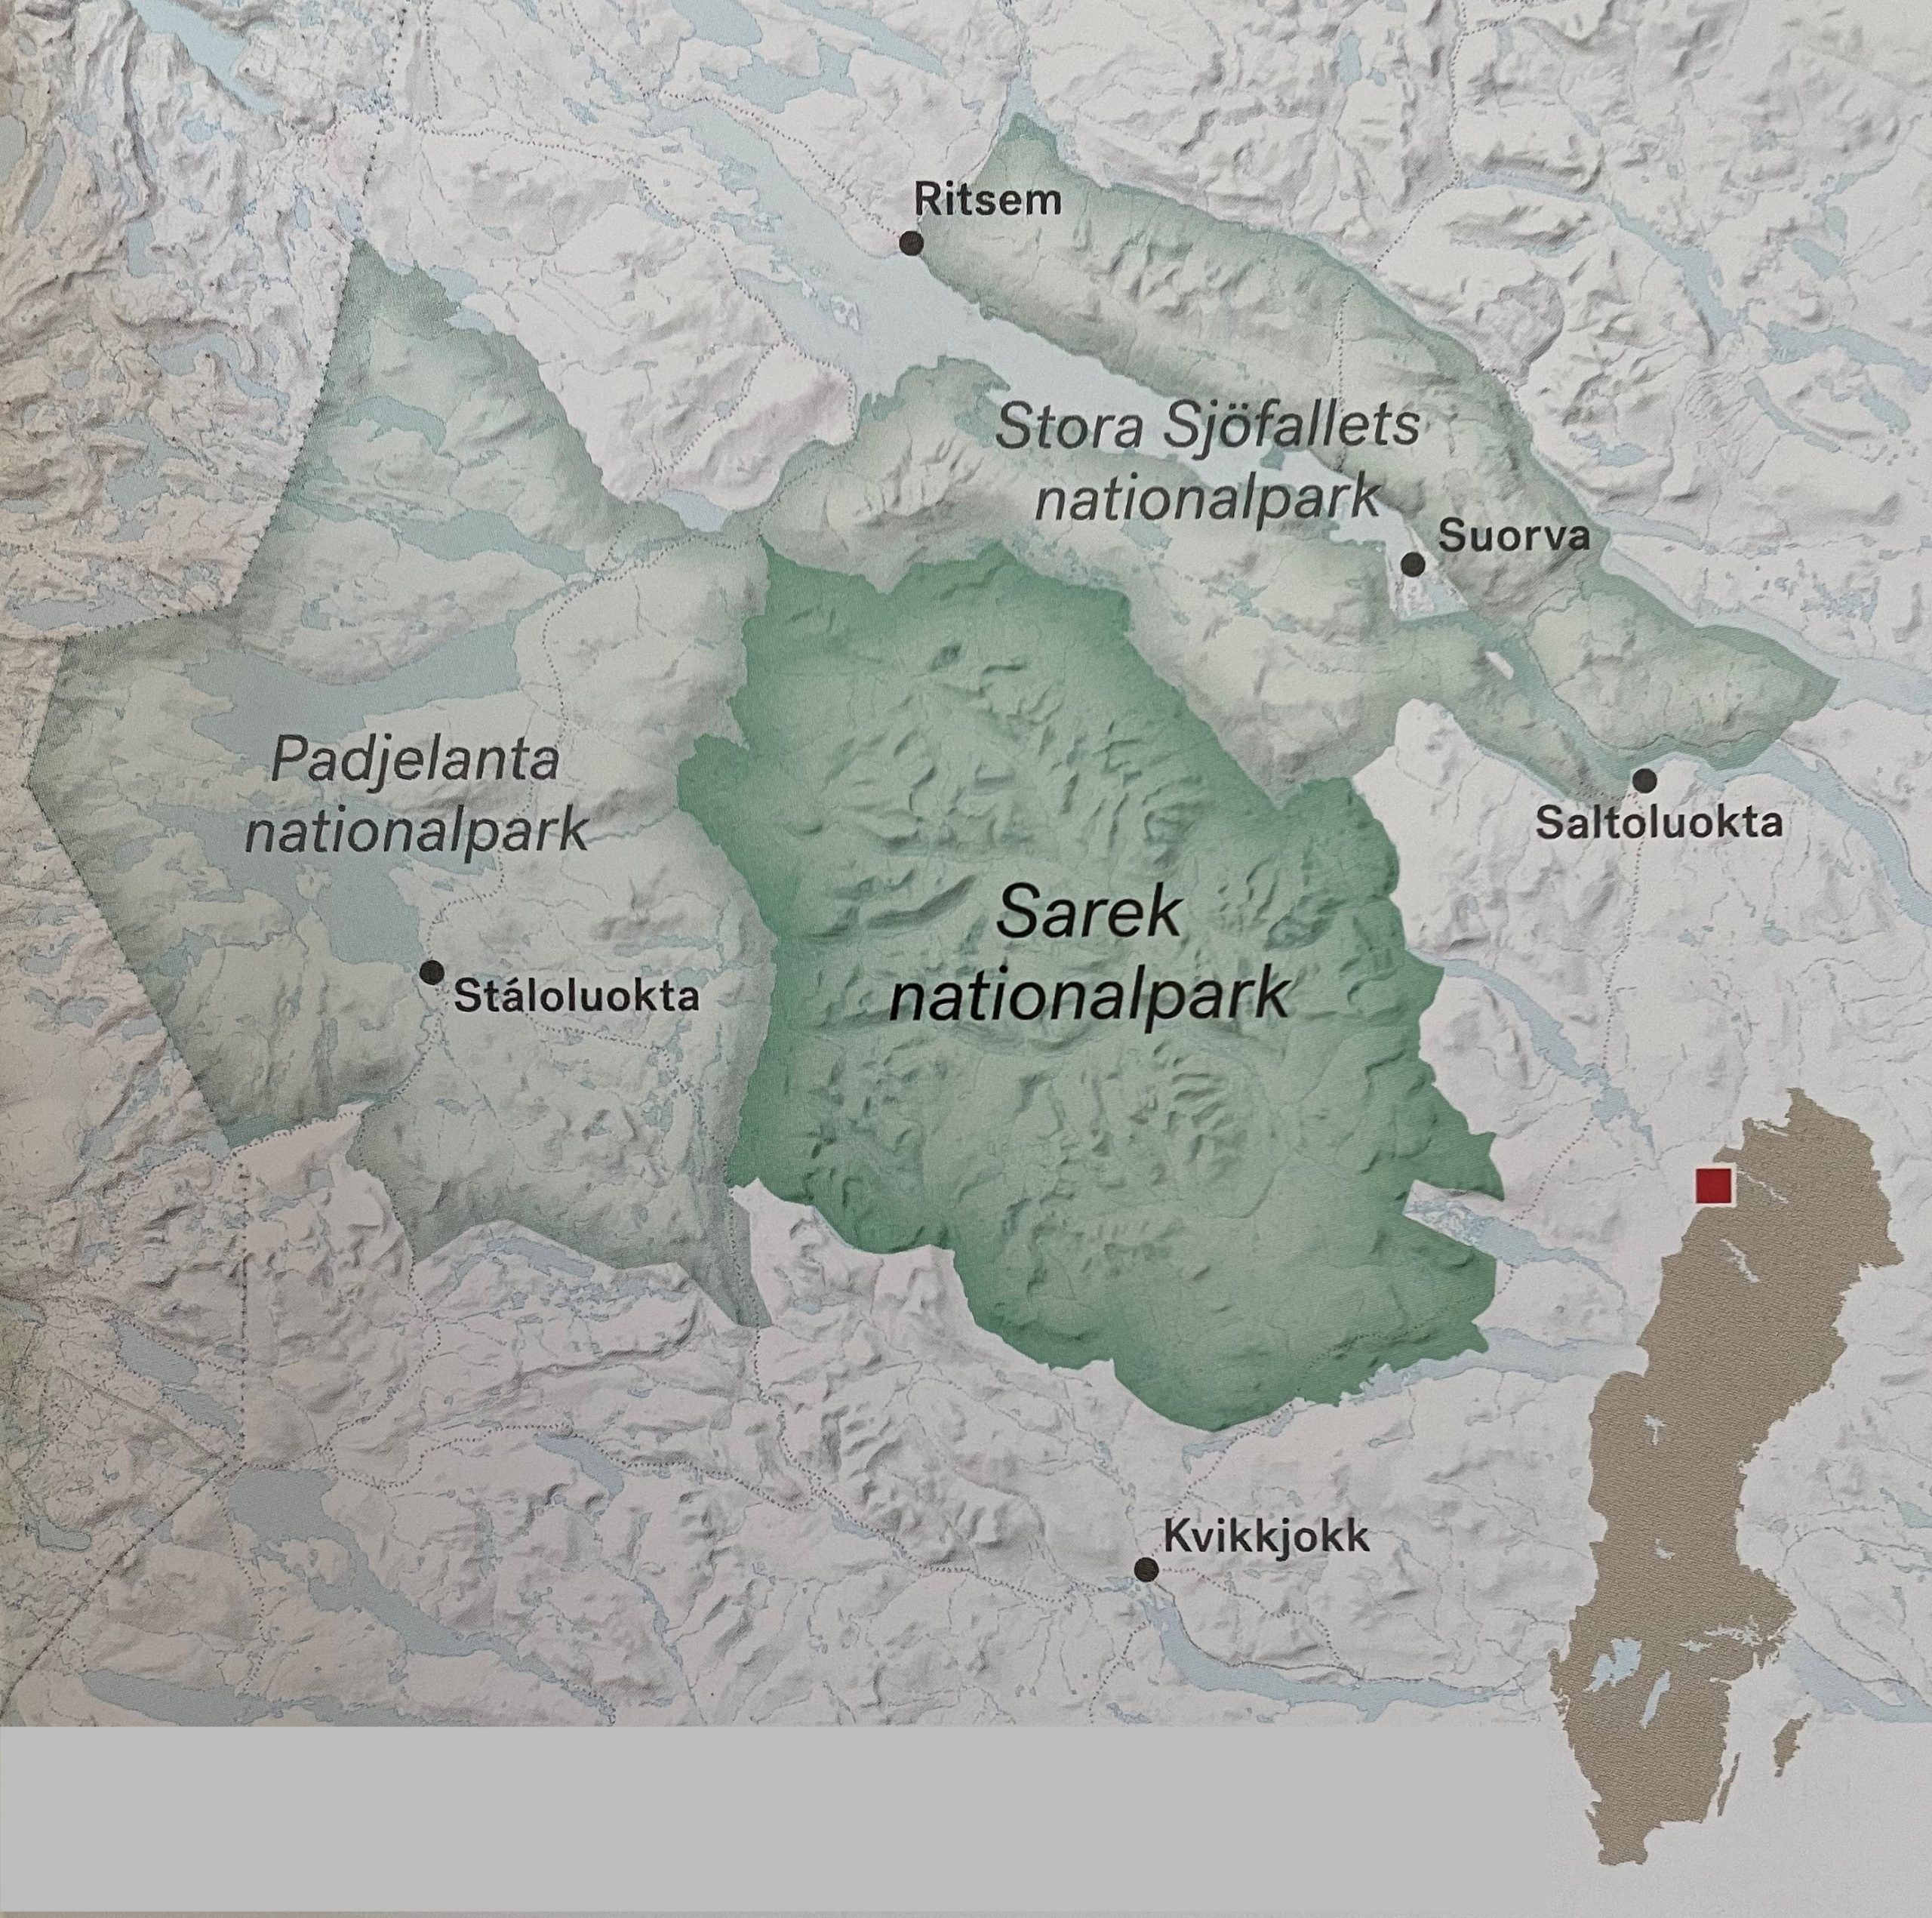 Sarek angränsar i norr till Stora Sjöfallets nationalpark och i väster till Padjelanta nationalpark